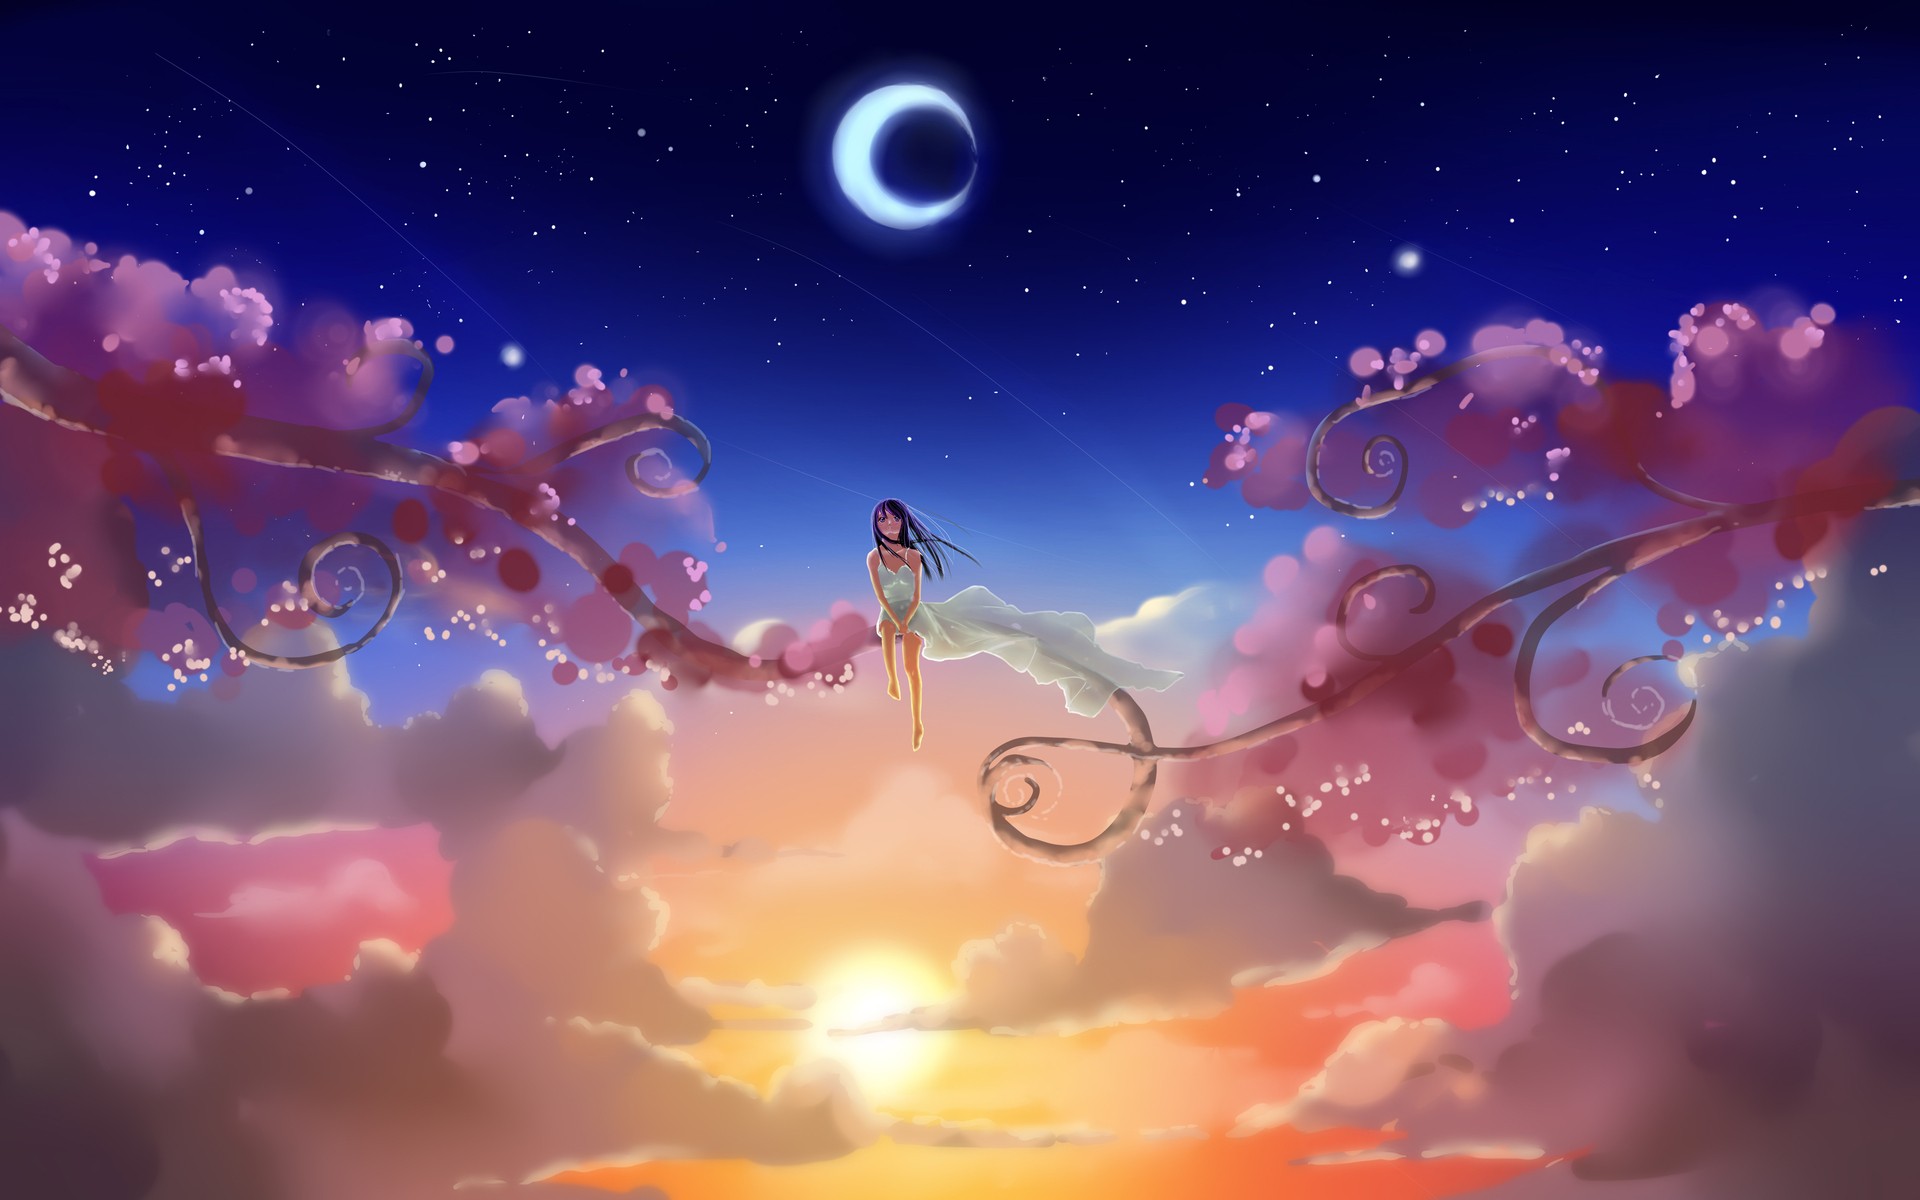 Nét đẹp lãng mạn của một đêm trăng sẽ đưa bạn vào thế giới Anime yêu thích của bạn. Hãy cùng chiêm ngưỡng bức tranh Anime với hình ảnh nền mặt trăng tuyệt đẹp, đưa bạn vào không gian đầy huyền bí và ma mị.